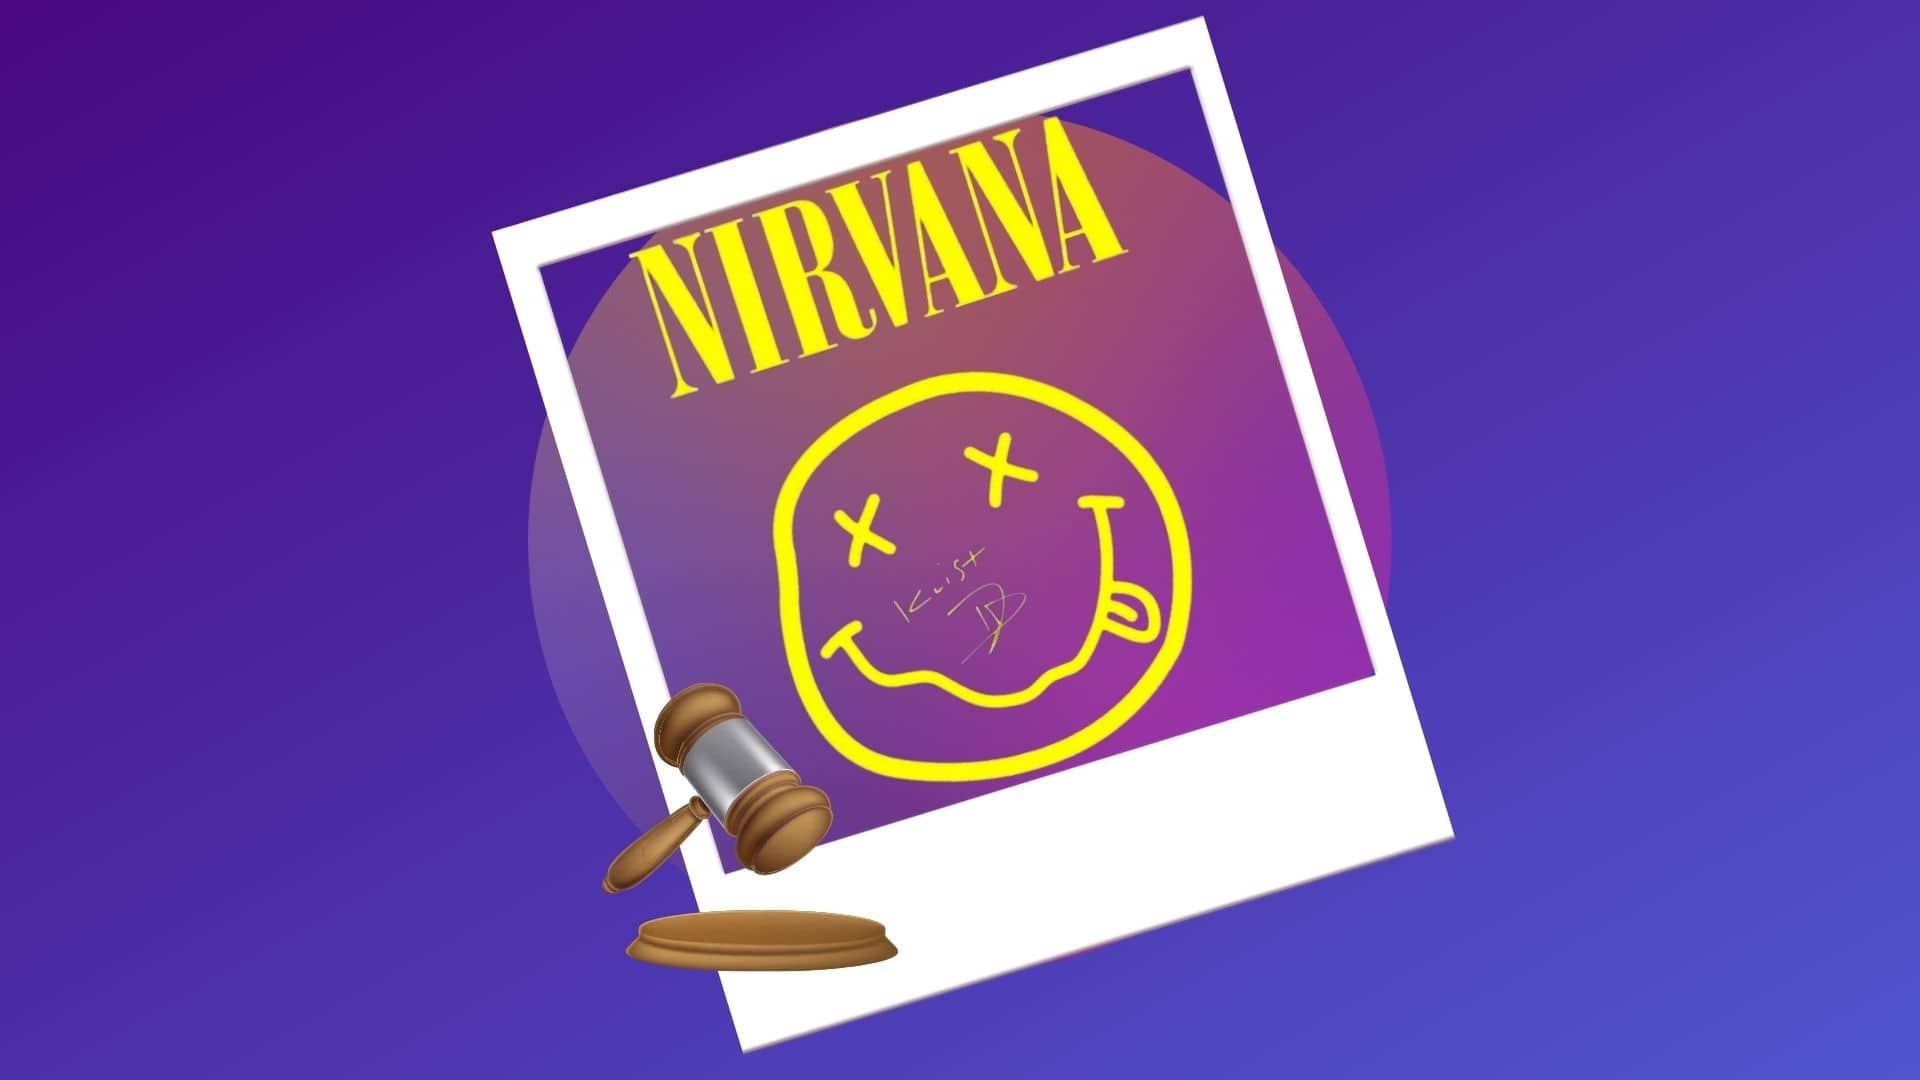 В конце февраля пройдет аукцион по продаже редких фото рок-группы Nirvana в формате NFT